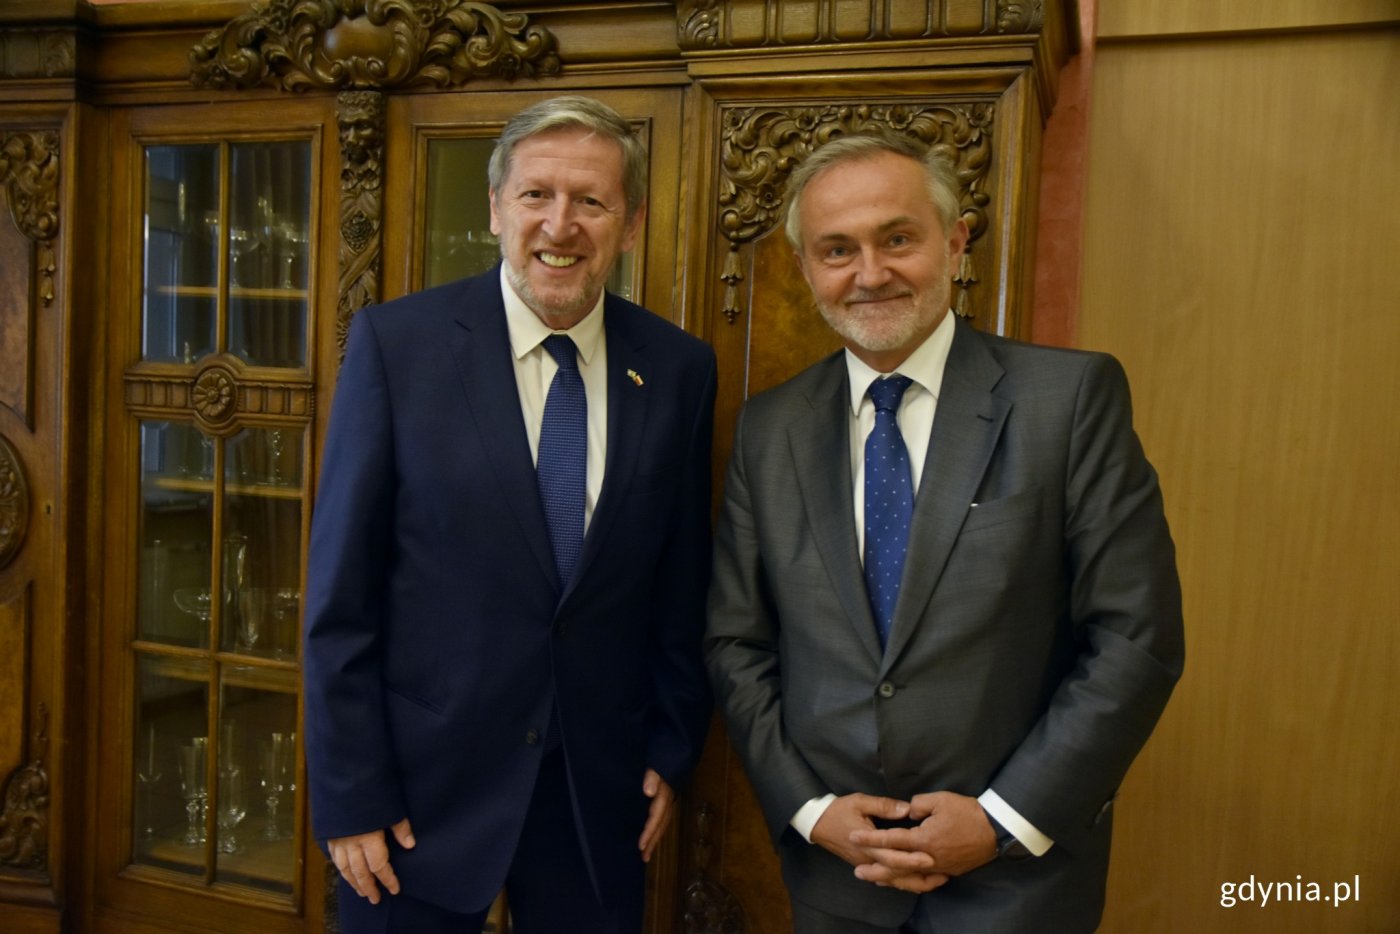 Alexander Ben Zvi, ambasador Izraela w Polsce spotkał się z prezydentem Gdyni Wojciechem Szczurkiem // fot. Sławomir Okoń